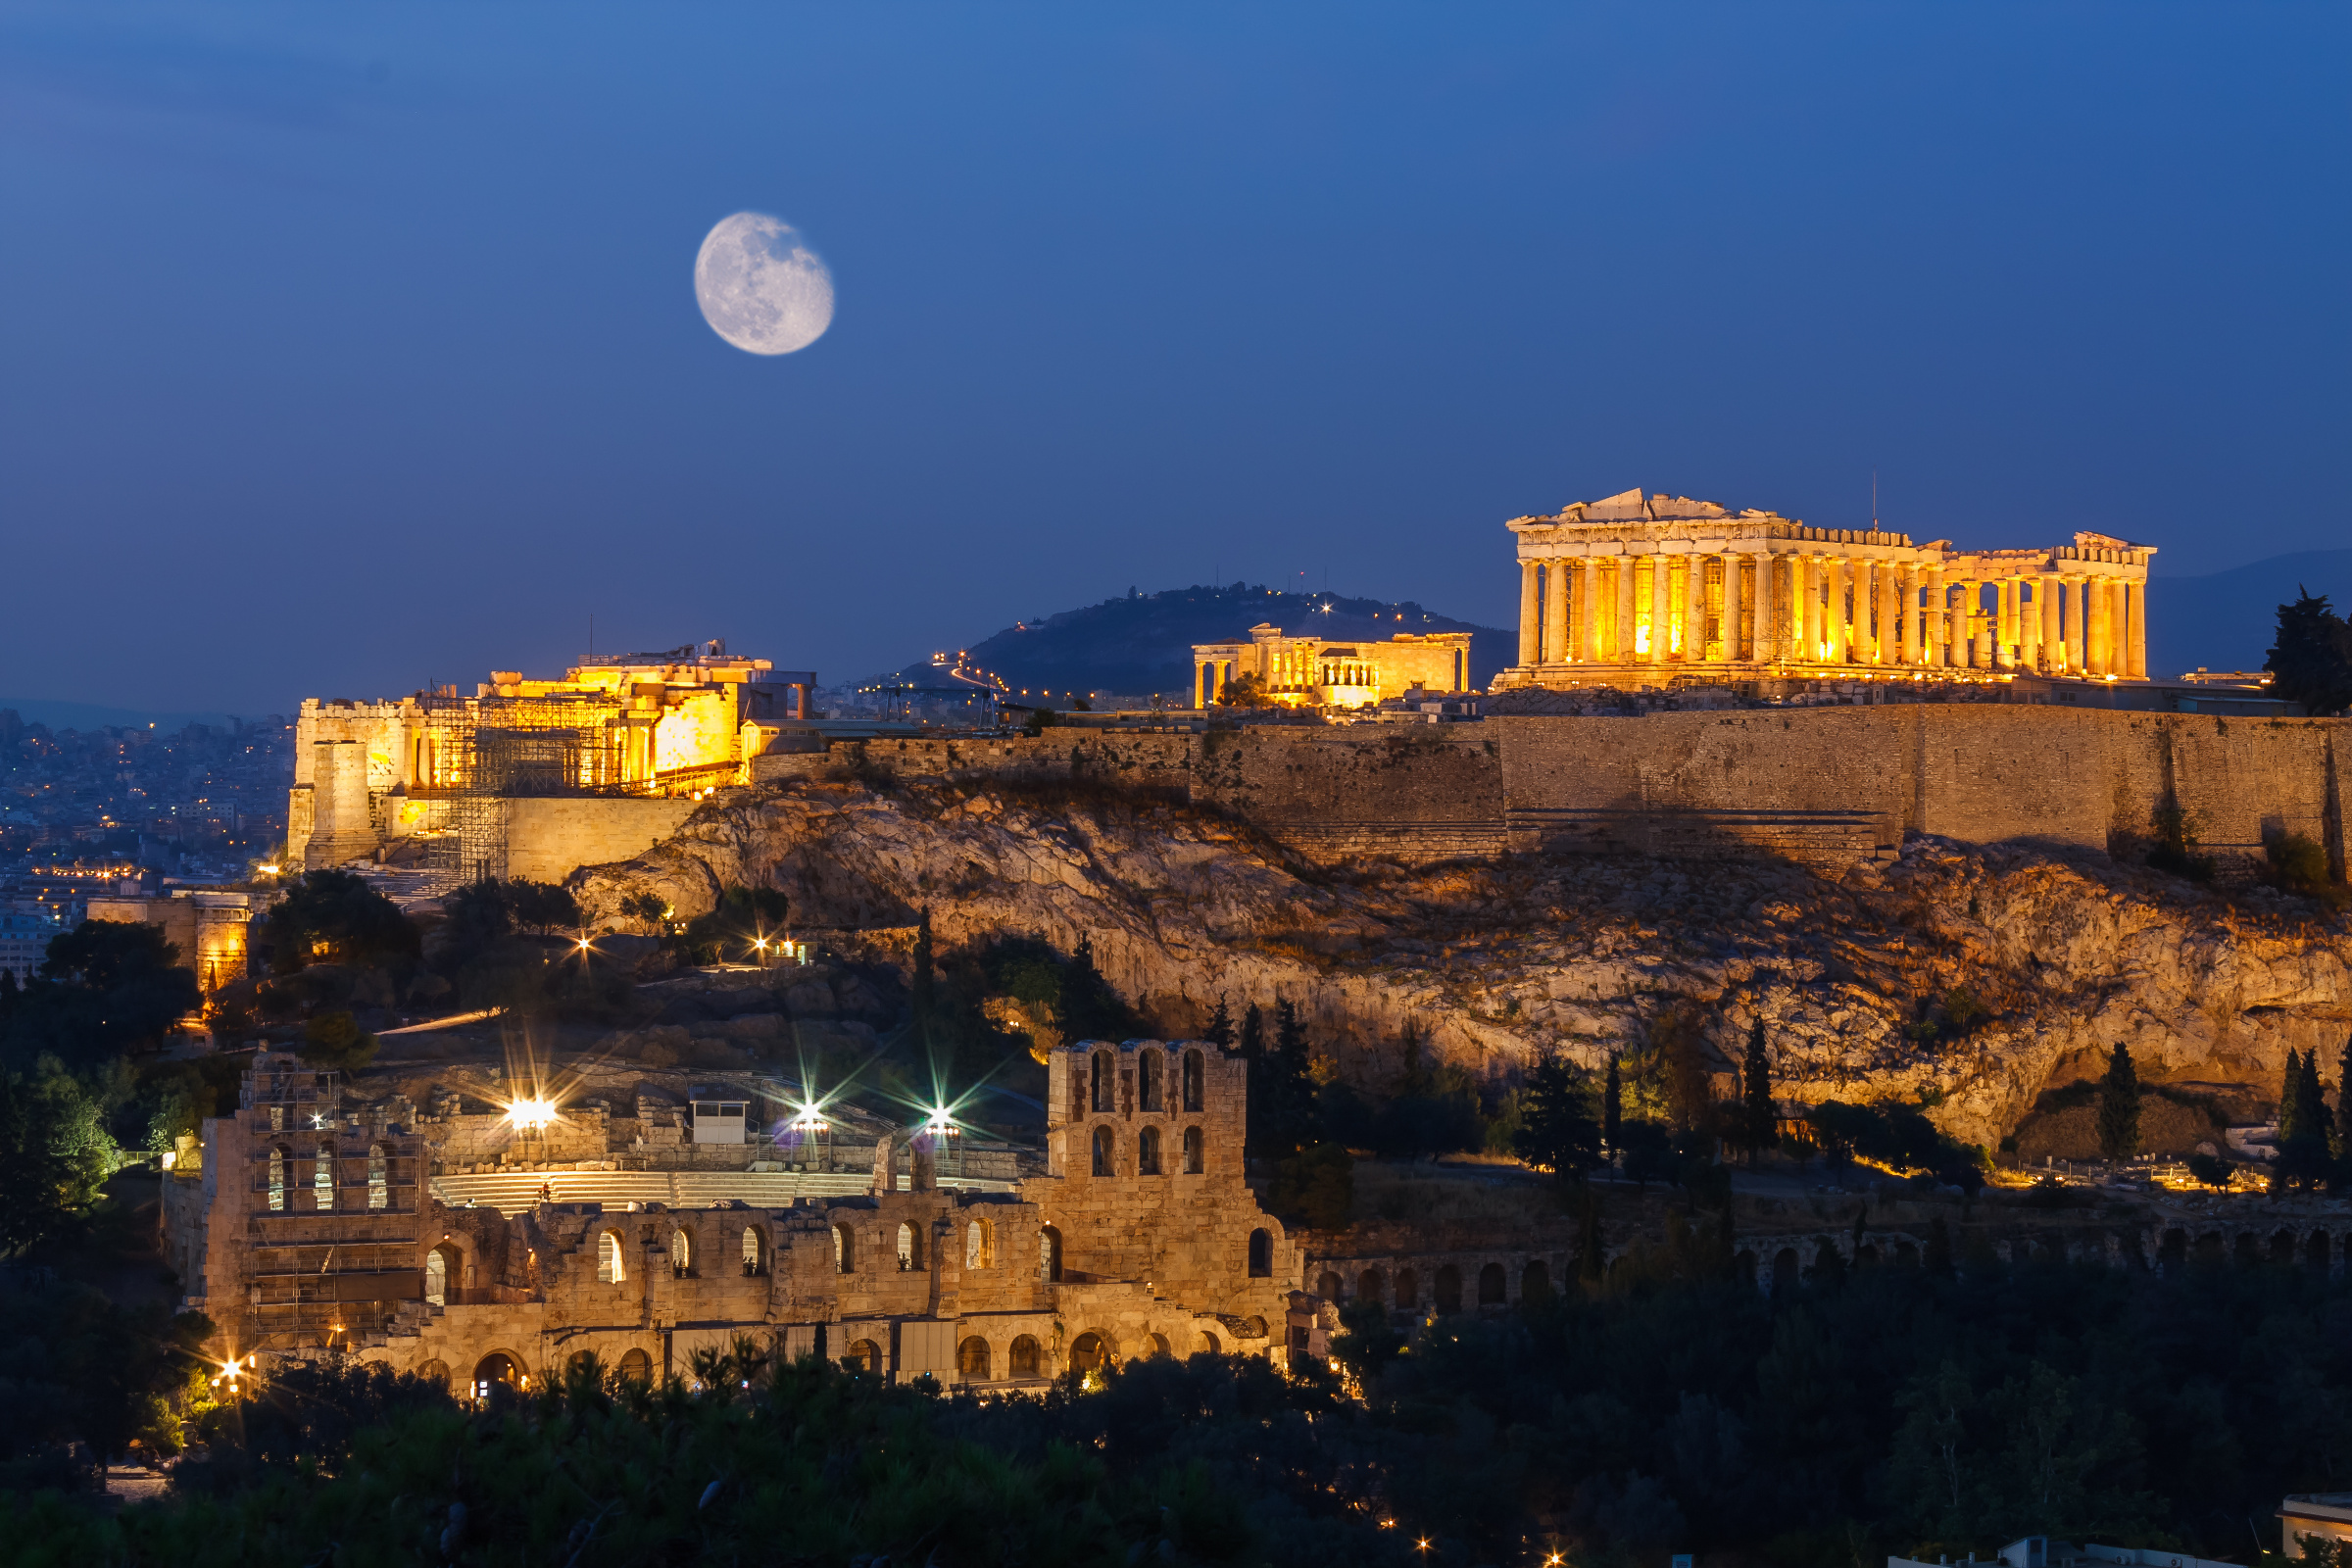 Acropolis-night-sm.jpg